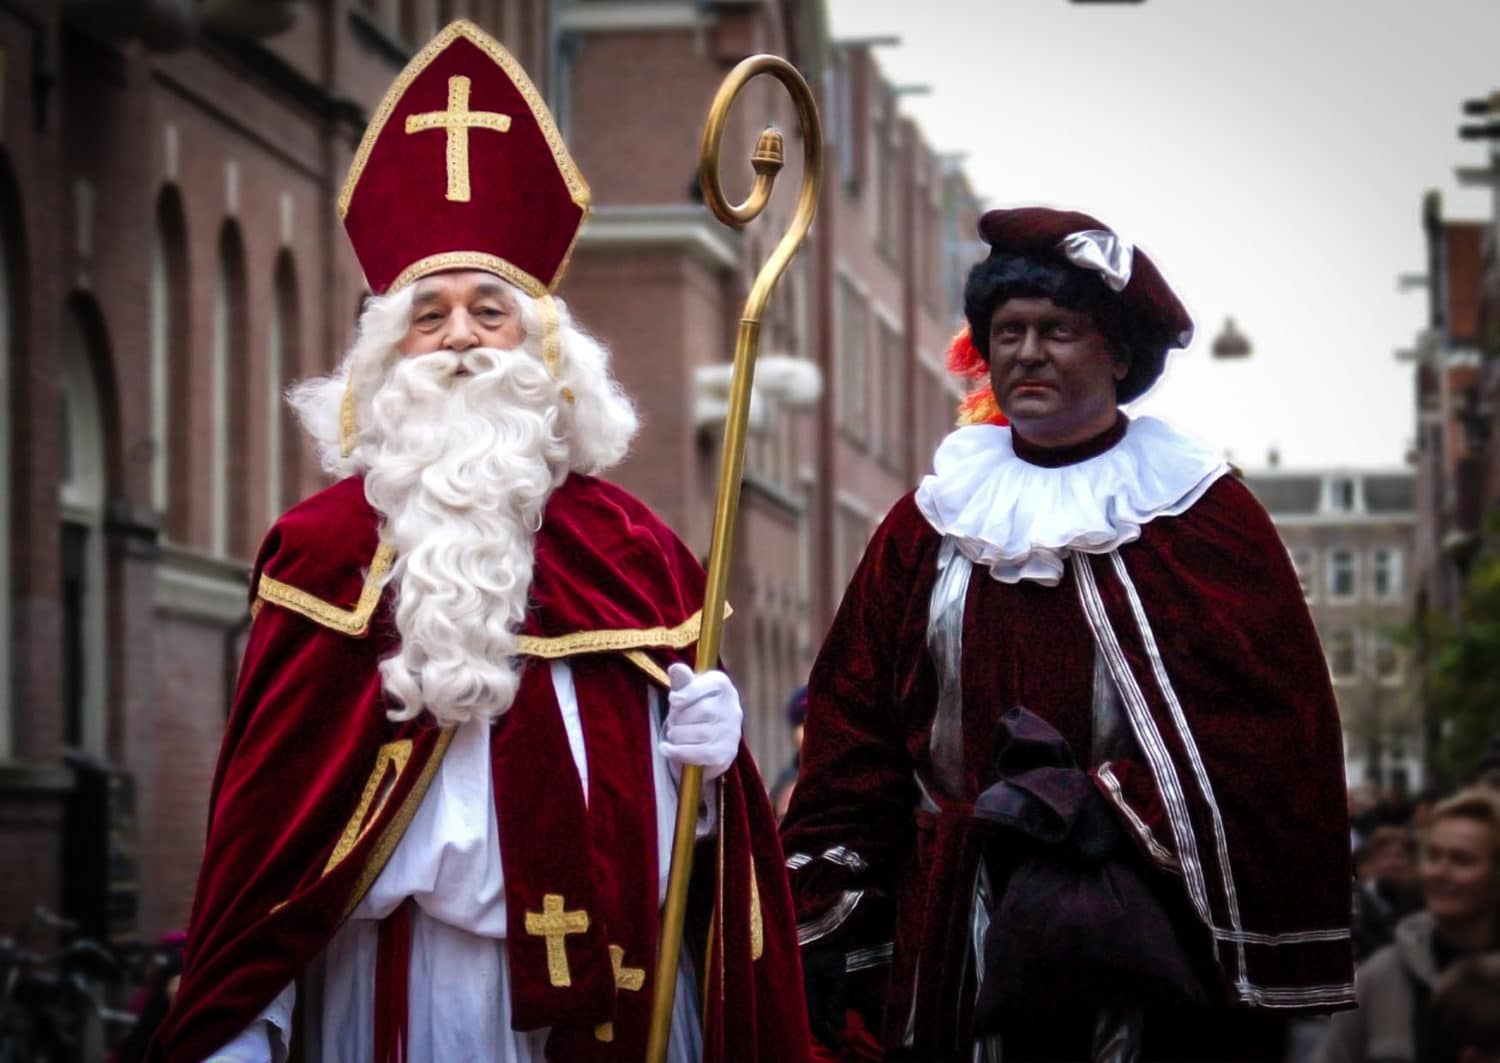 Betere The end of Zwarte Piet? No more Black Pete for Sinterklaas XK-37